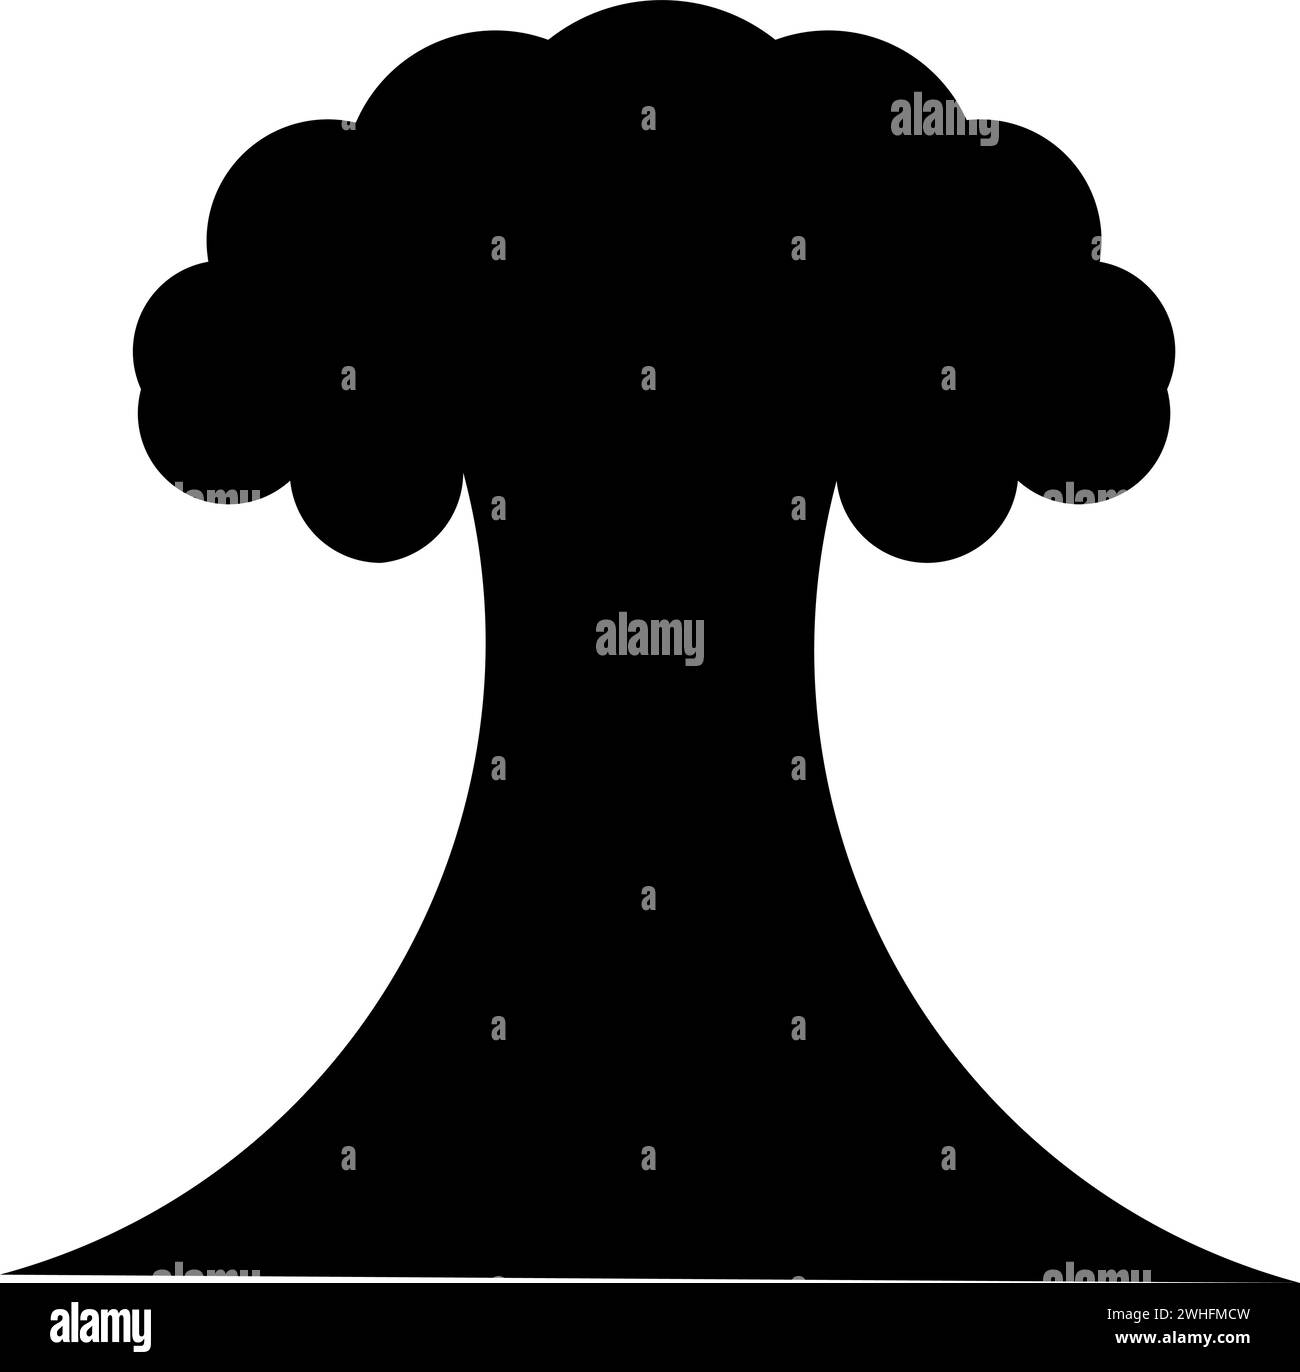 Esplosione nucleare fungo esplosivo icona distruzione esplosiva colore nero immagine vettoriale stile piatto semplice Illustrazione Vettoriale